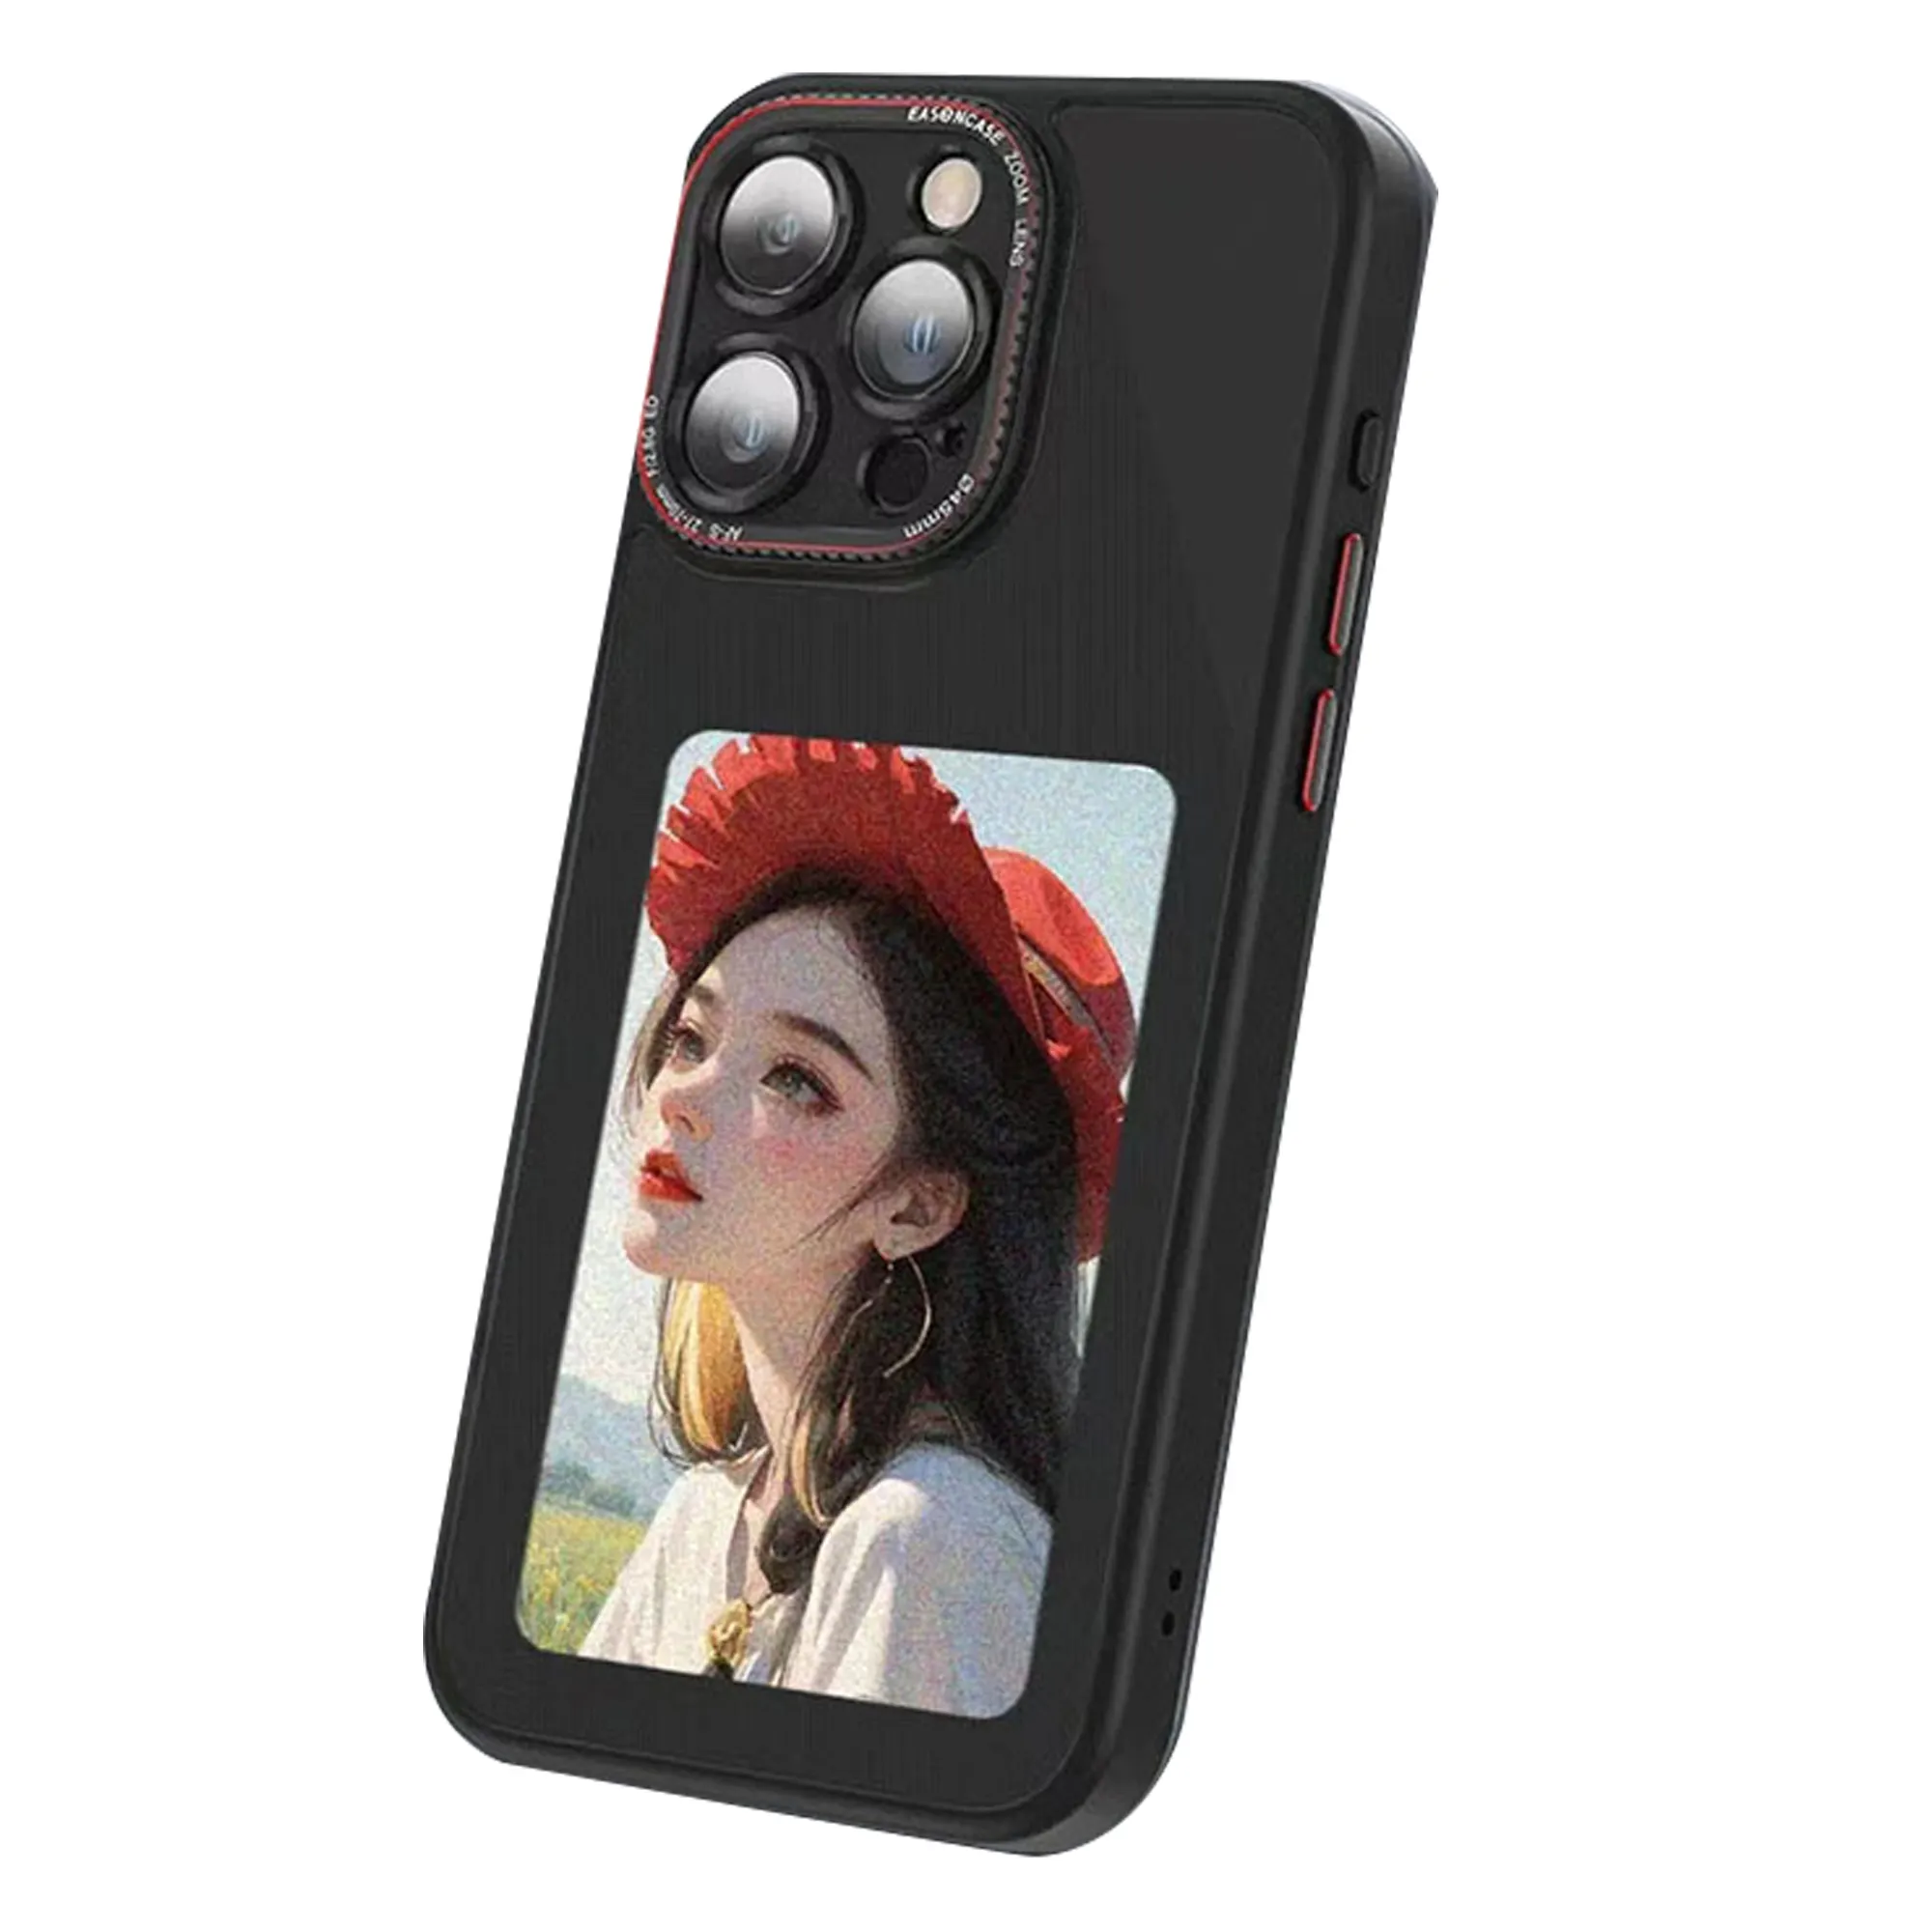 Capa para celular inteligente DIY inteligente com transferência Nfc de quatro cores e display de tinta eletrônica, ideal para a pele, com padrões ilimitados